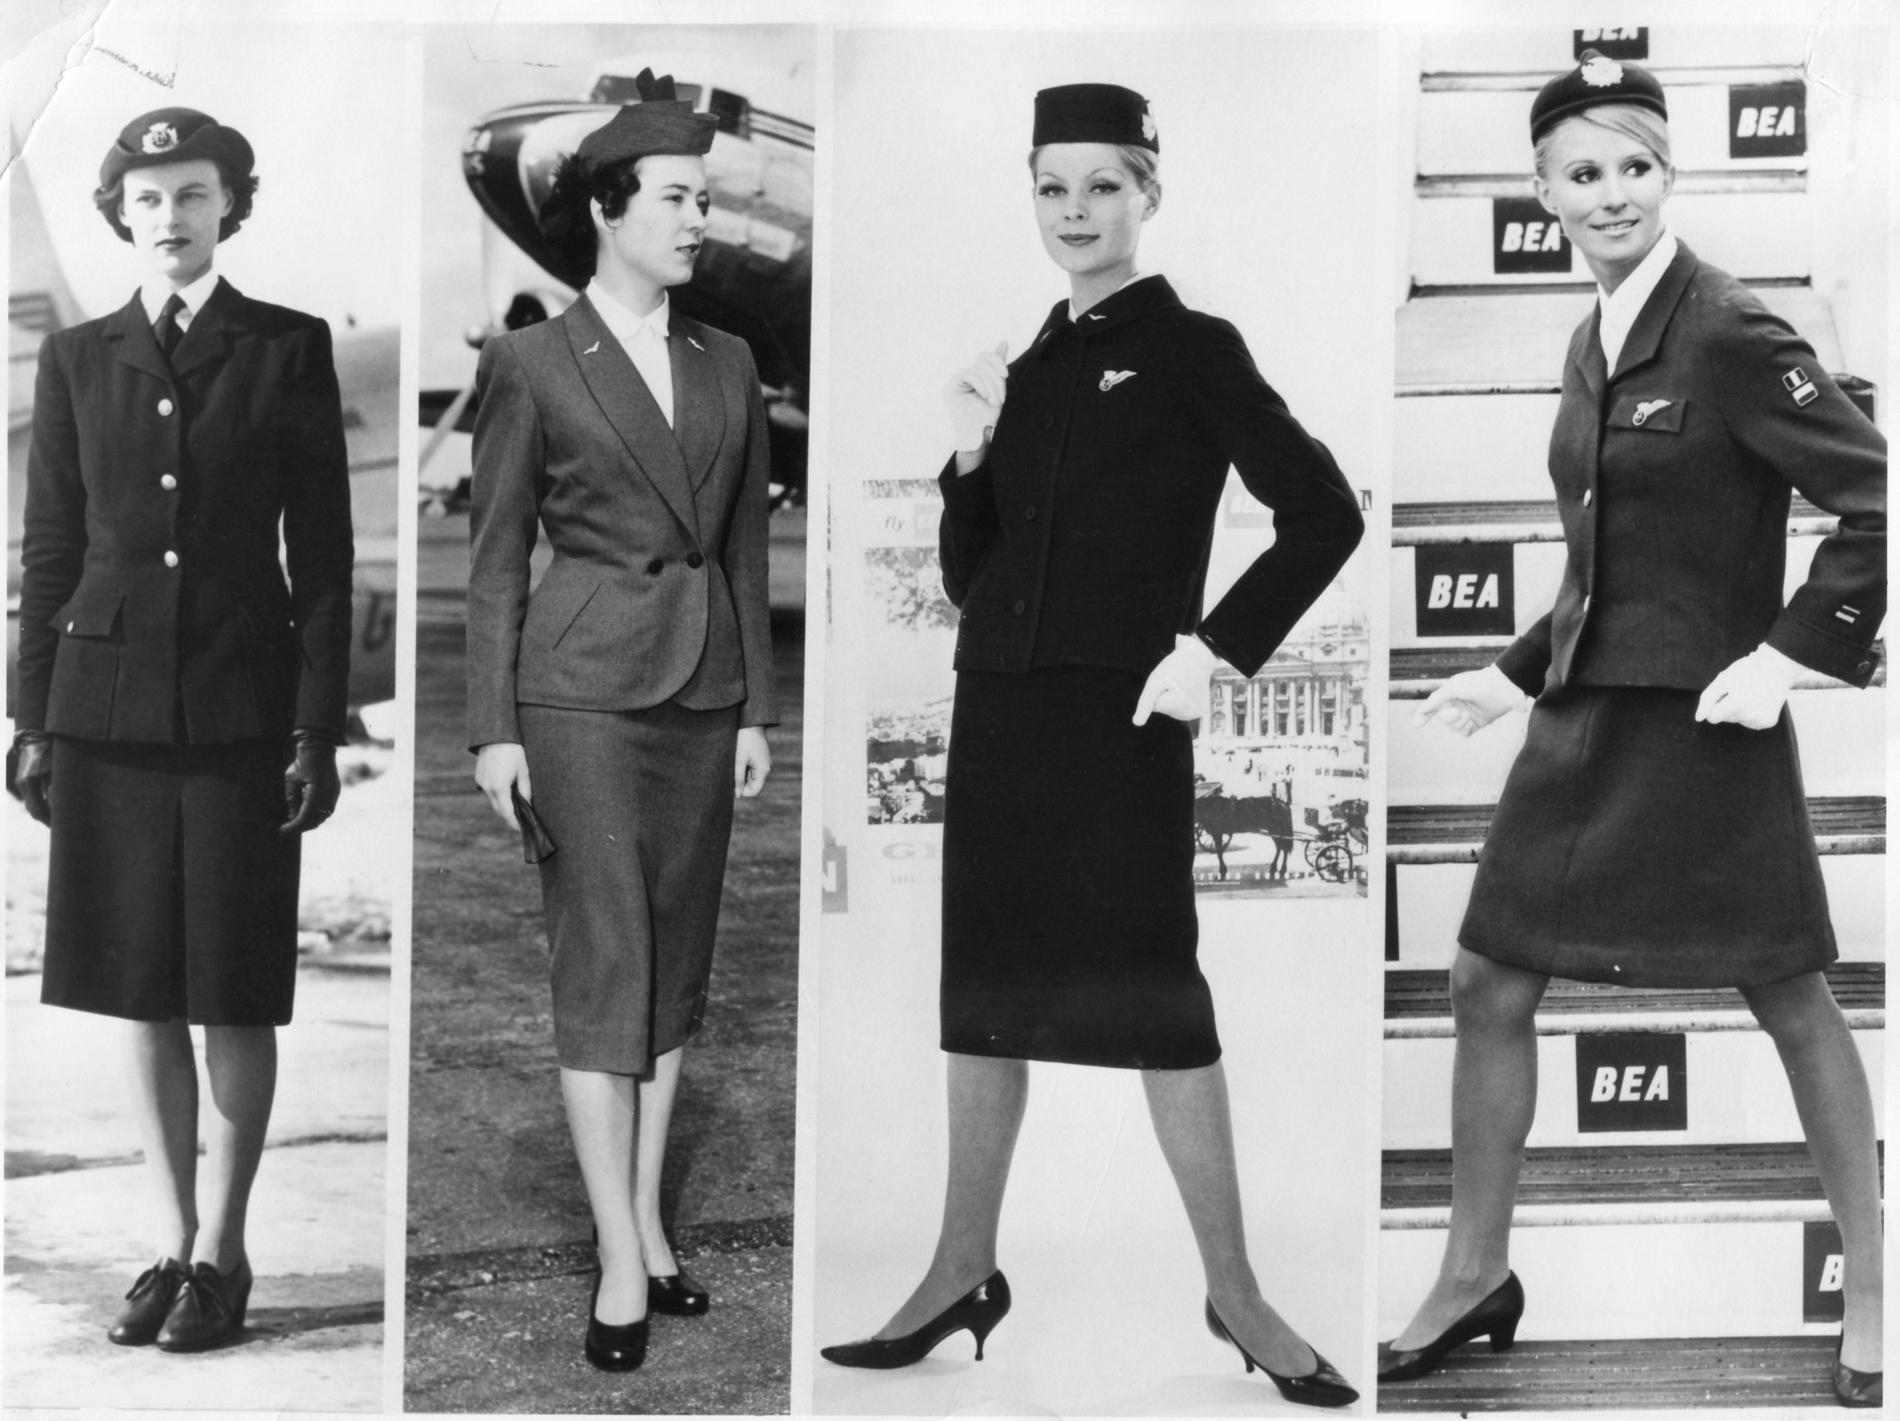 Mellan år 1947 och 1967 skedde en del förändringar i kabinpersonalens klädsel. 